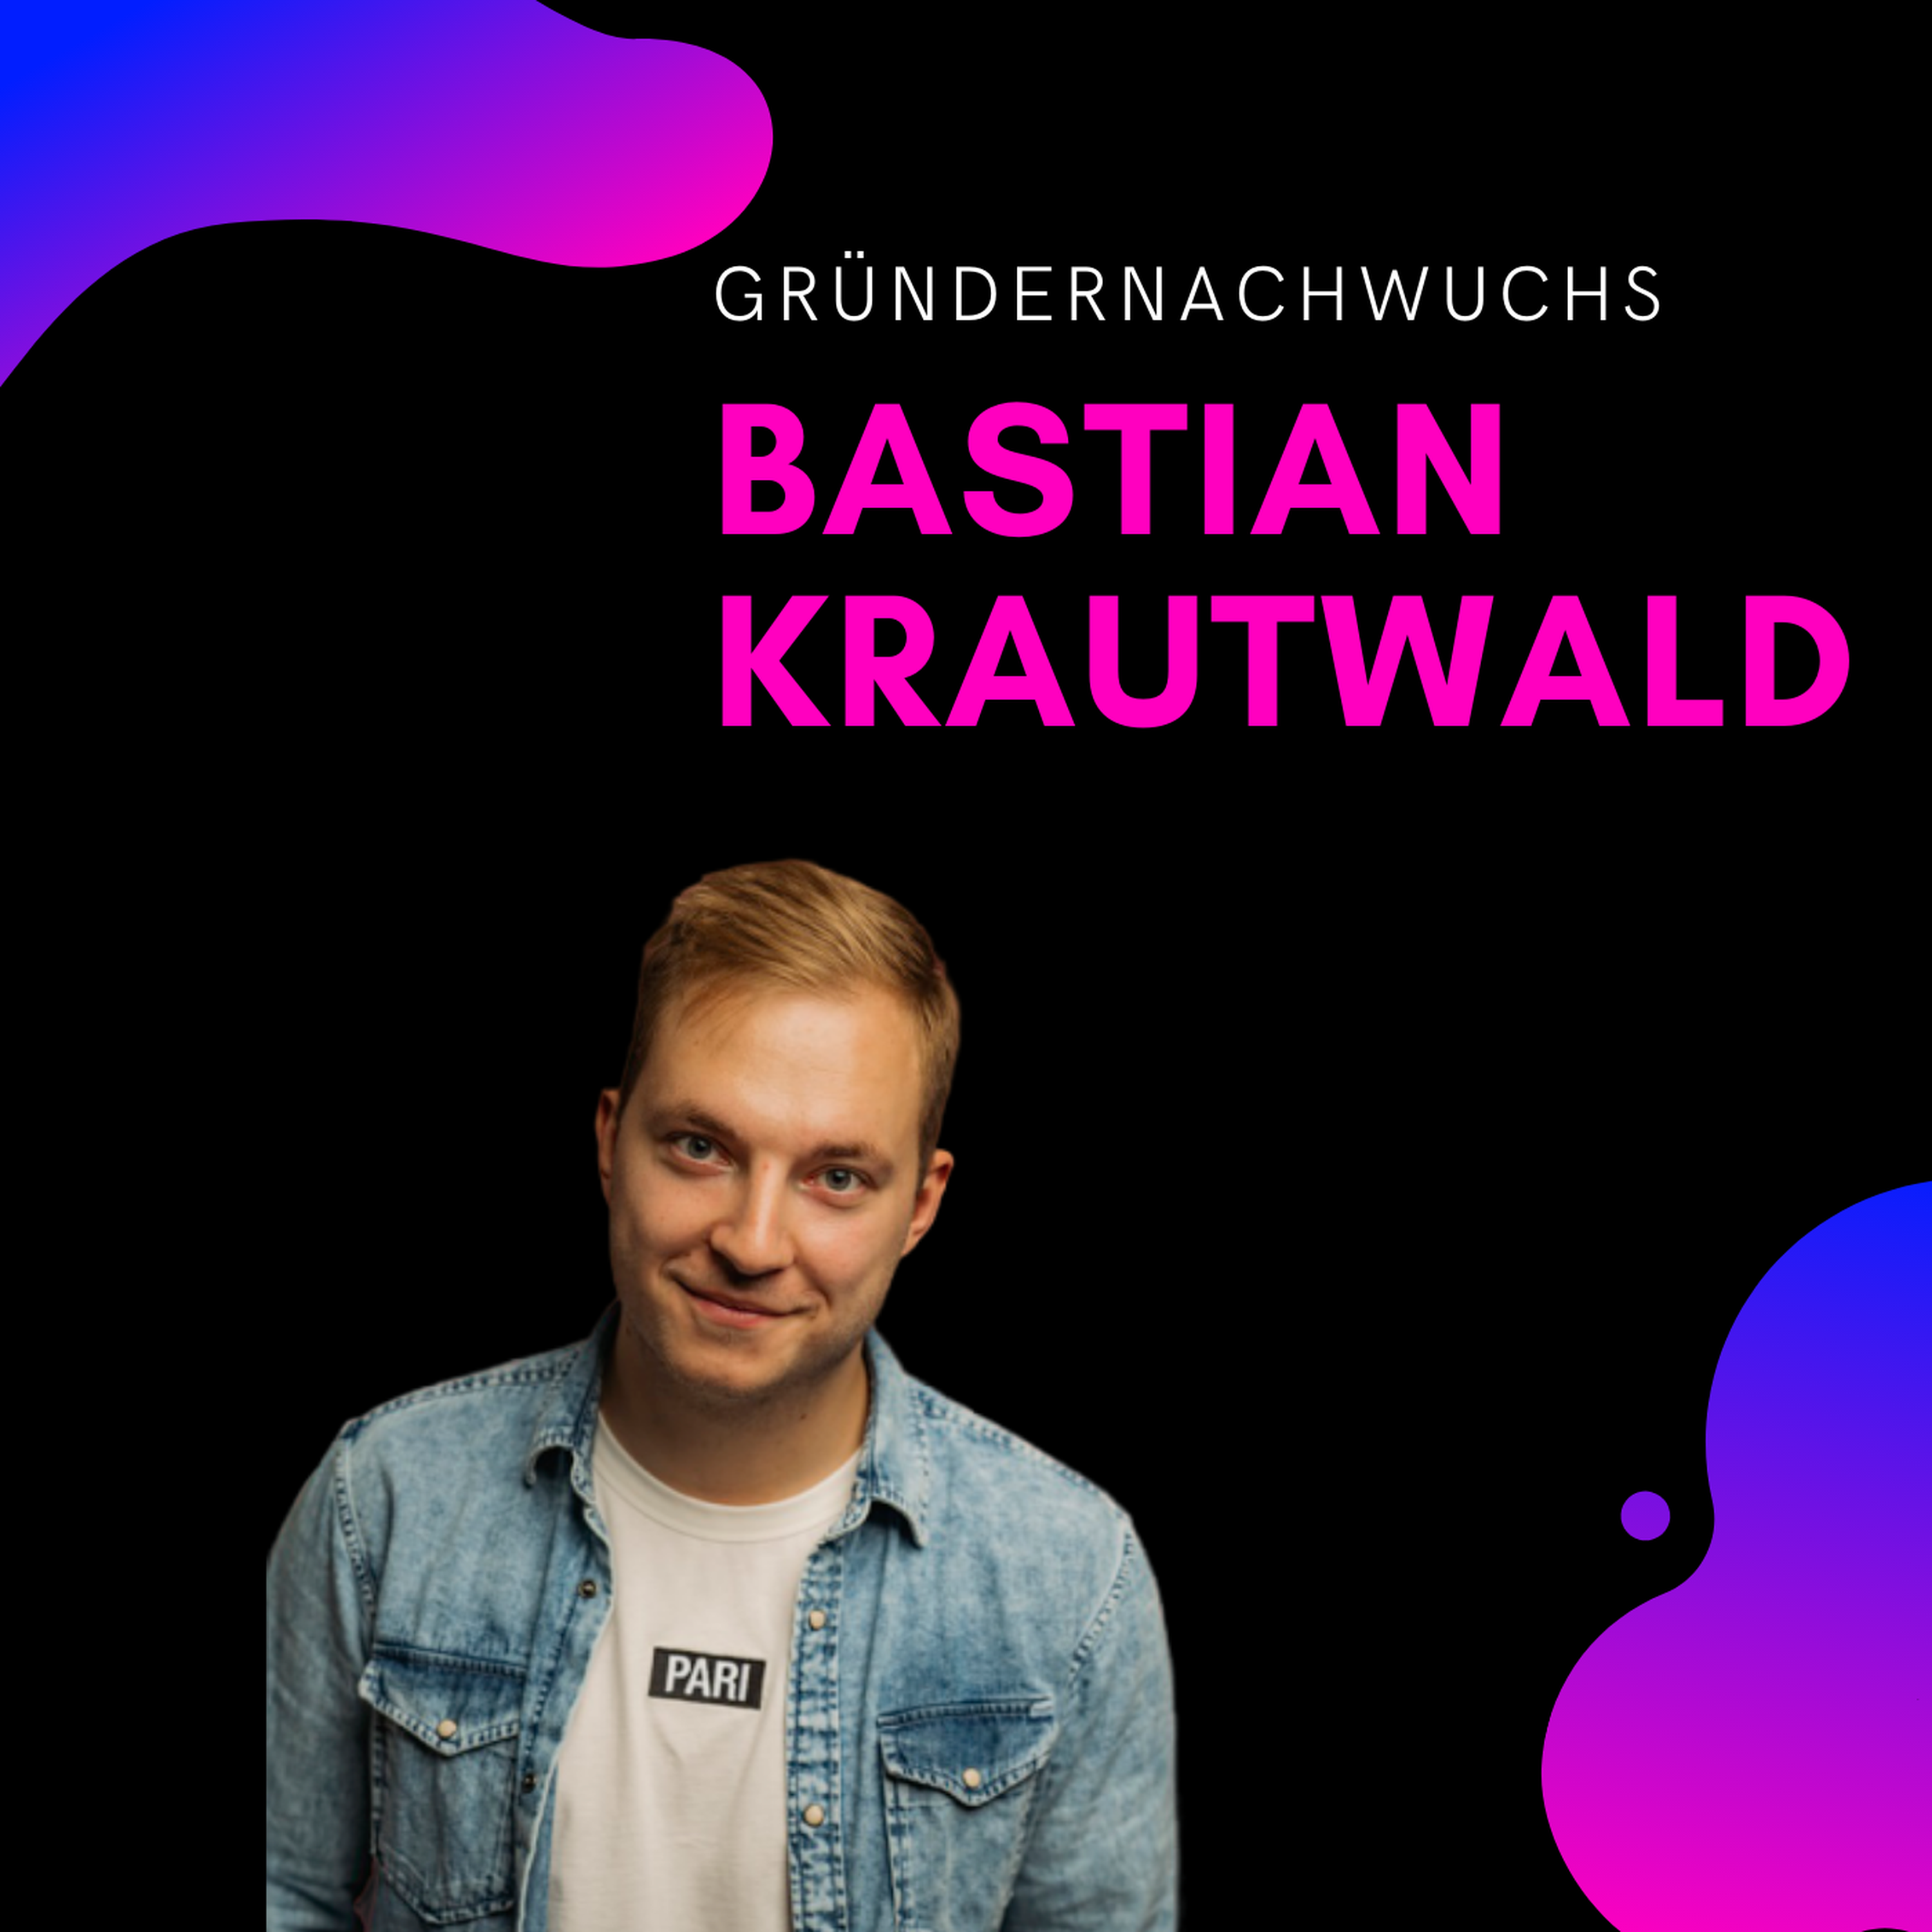 Bastian Krautwald, deineStudienfinanzierung | Gründernachwuchs Image